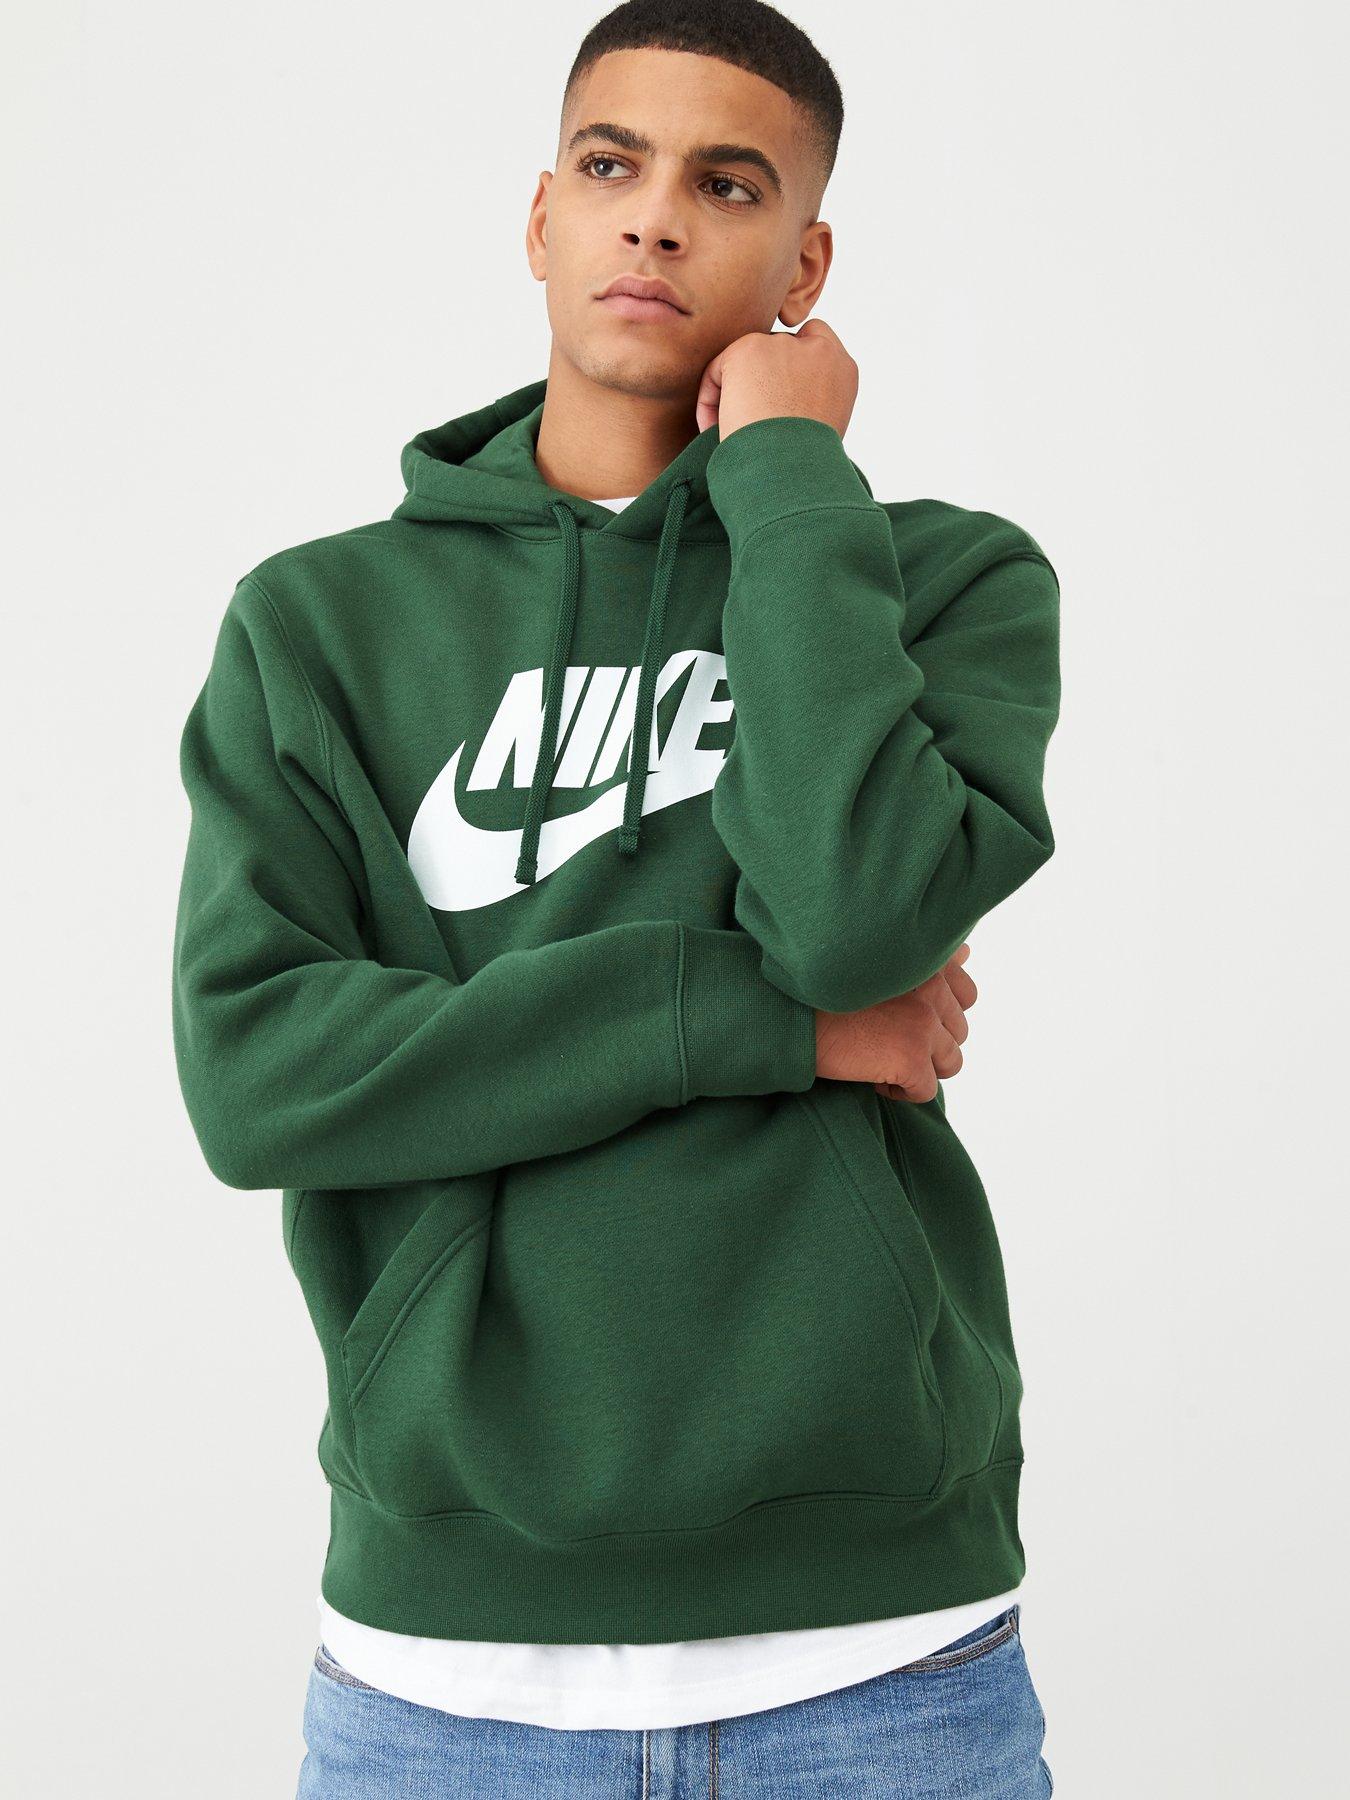 green mens nike hoodie